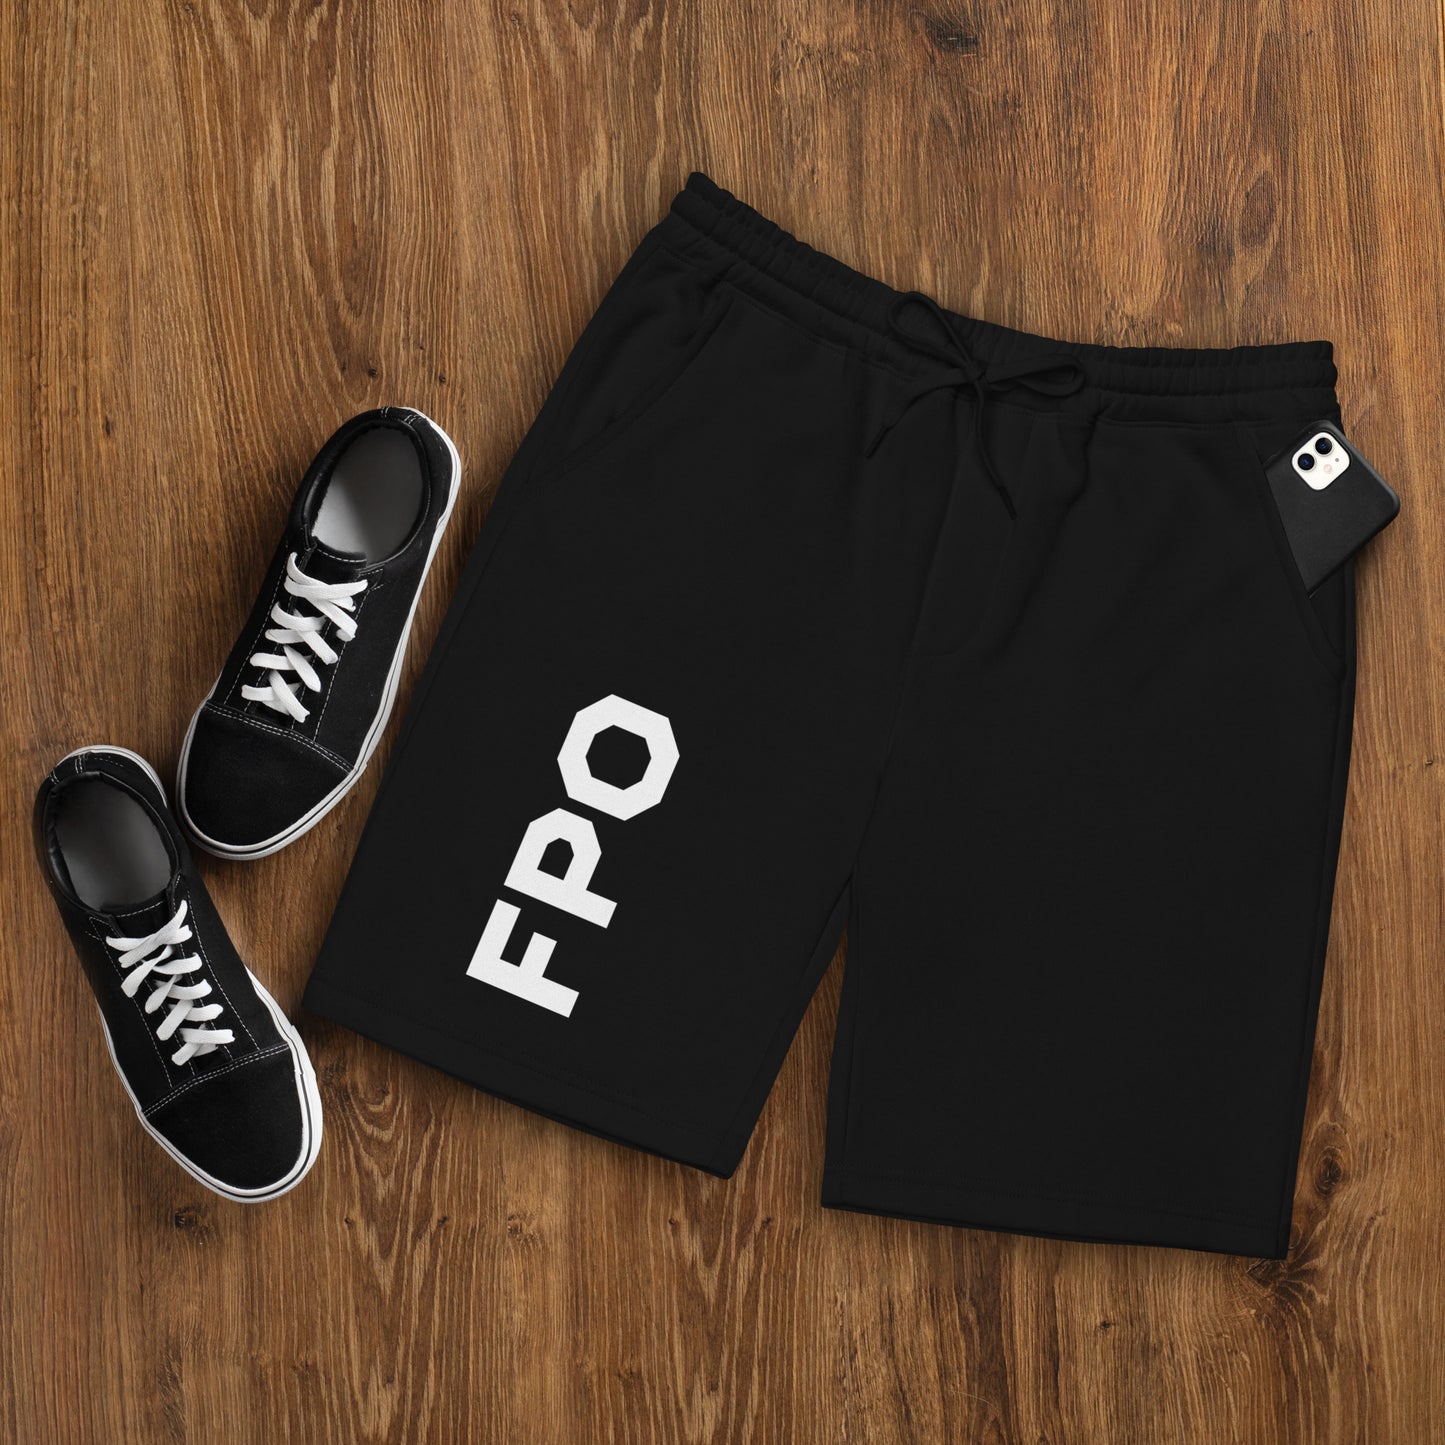 FPO Men's fleece shorts